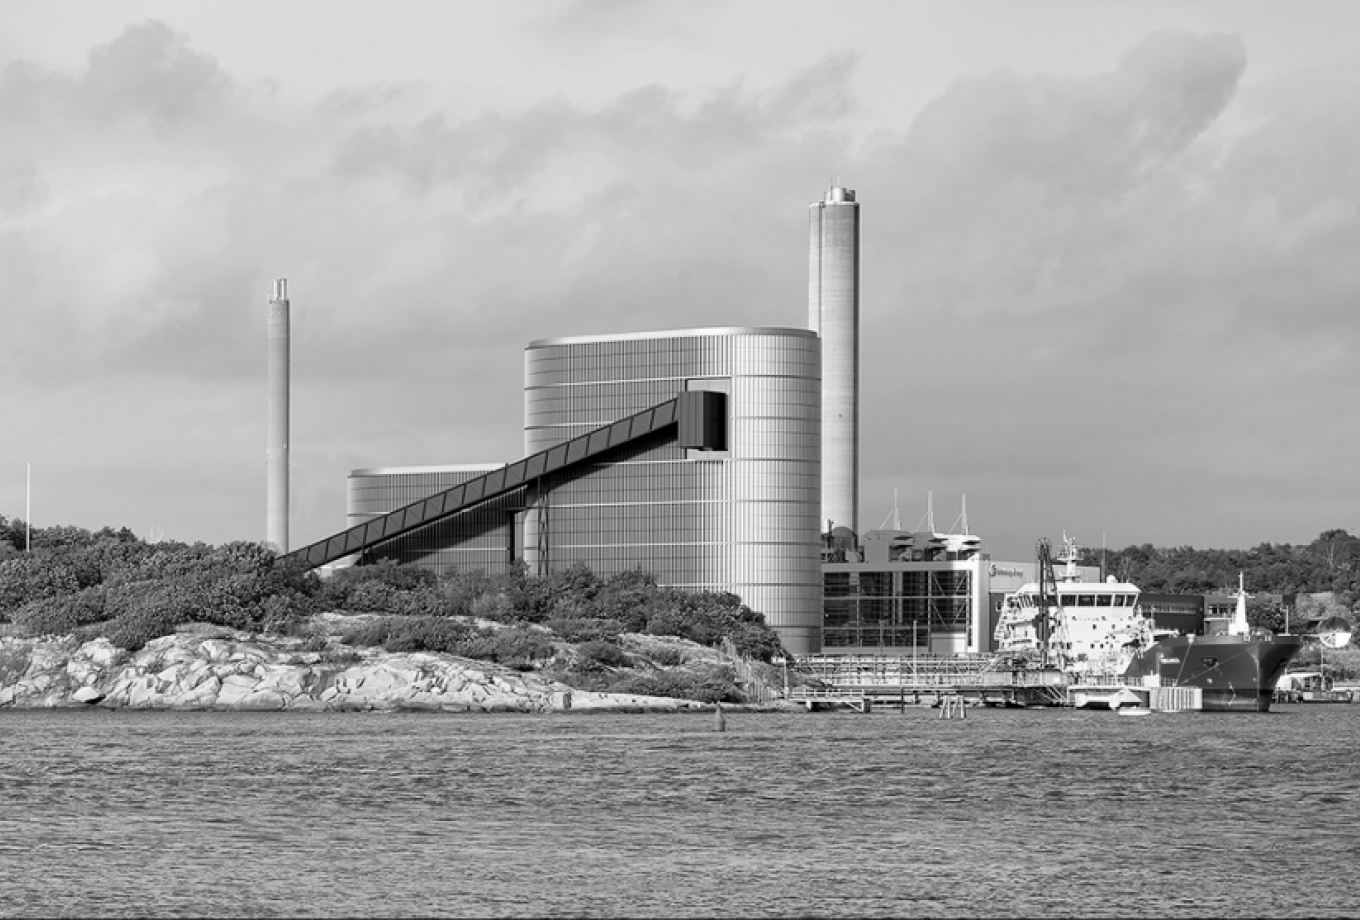 gottlieb-paludan-architects_biomassevaerk_rya_goteborg_1